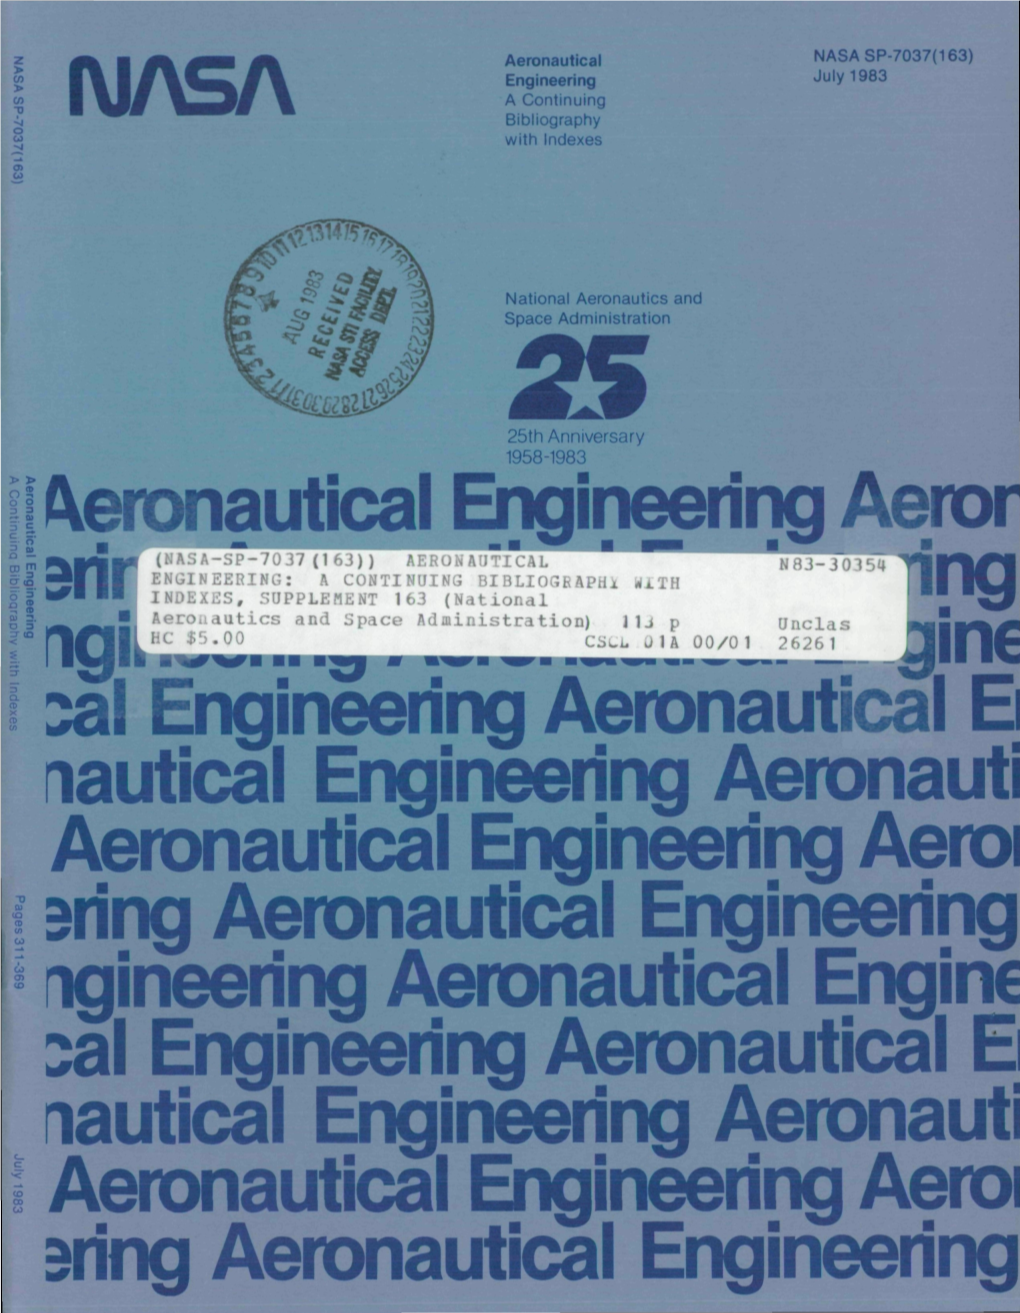 NASA Aeronautical Engineering Aeror Ngineering Ae * Engineering J Tical